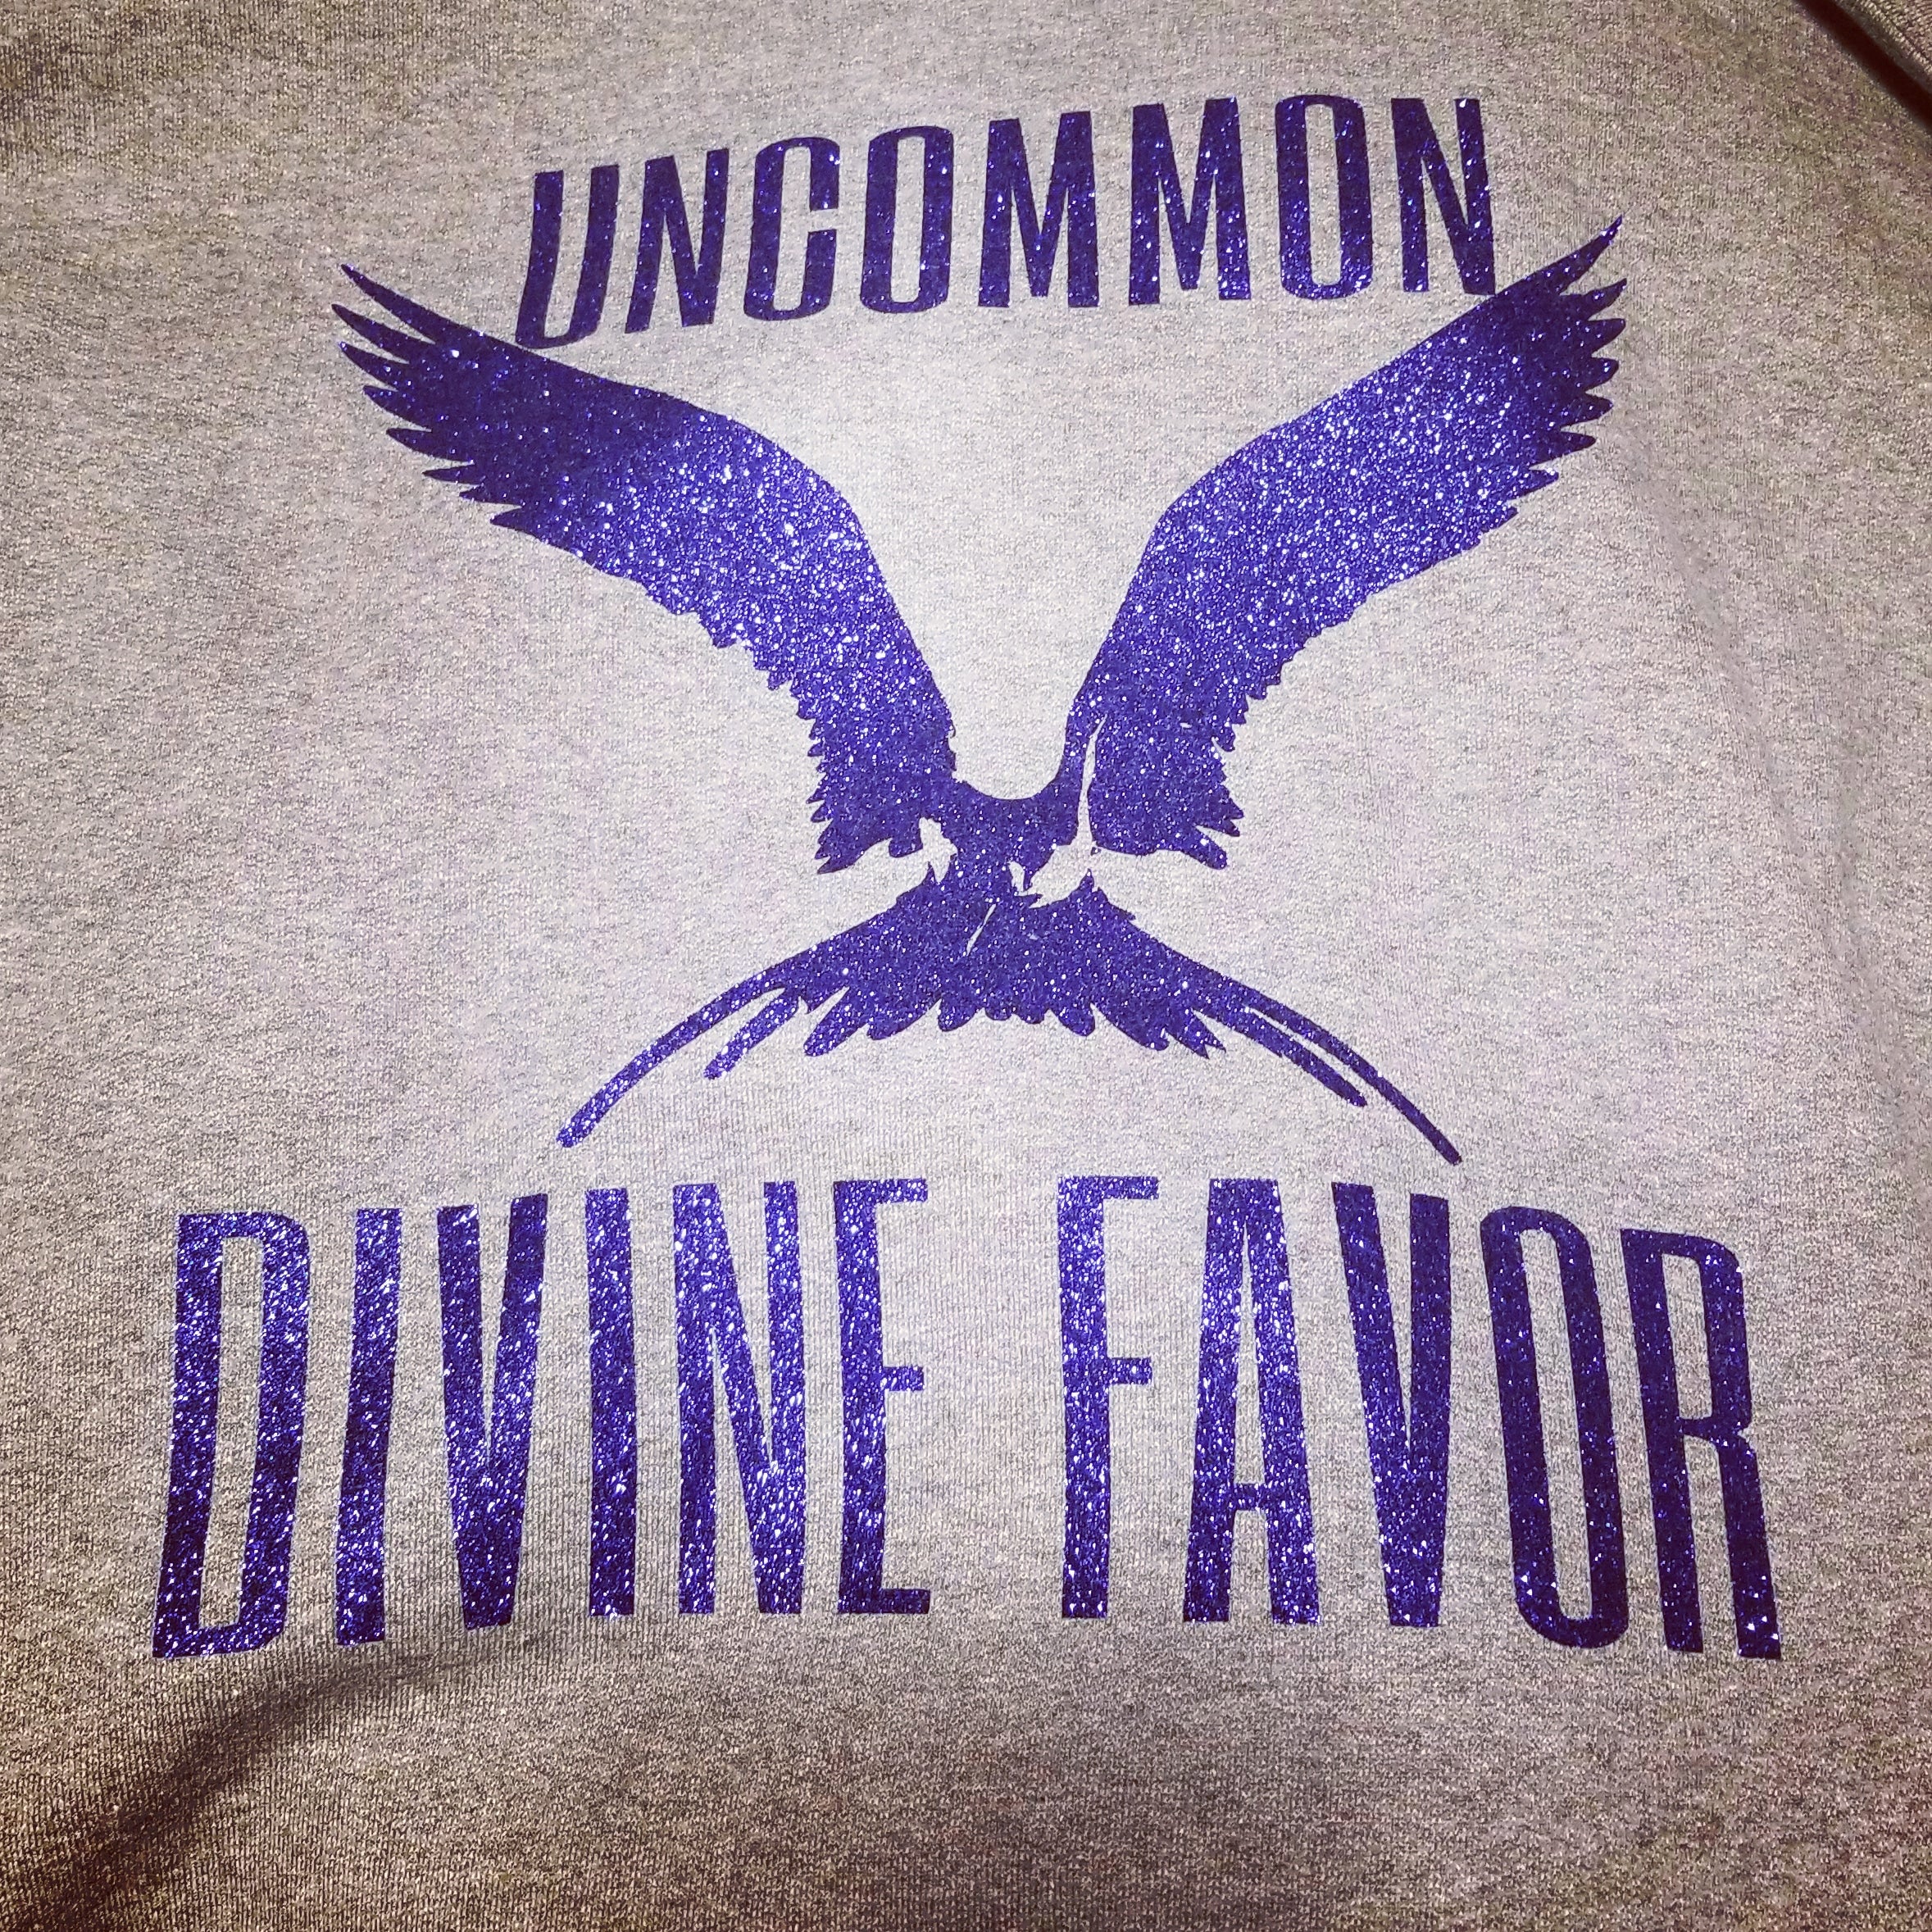 Uncommon Divine Favor Hoodie Sweatshirt